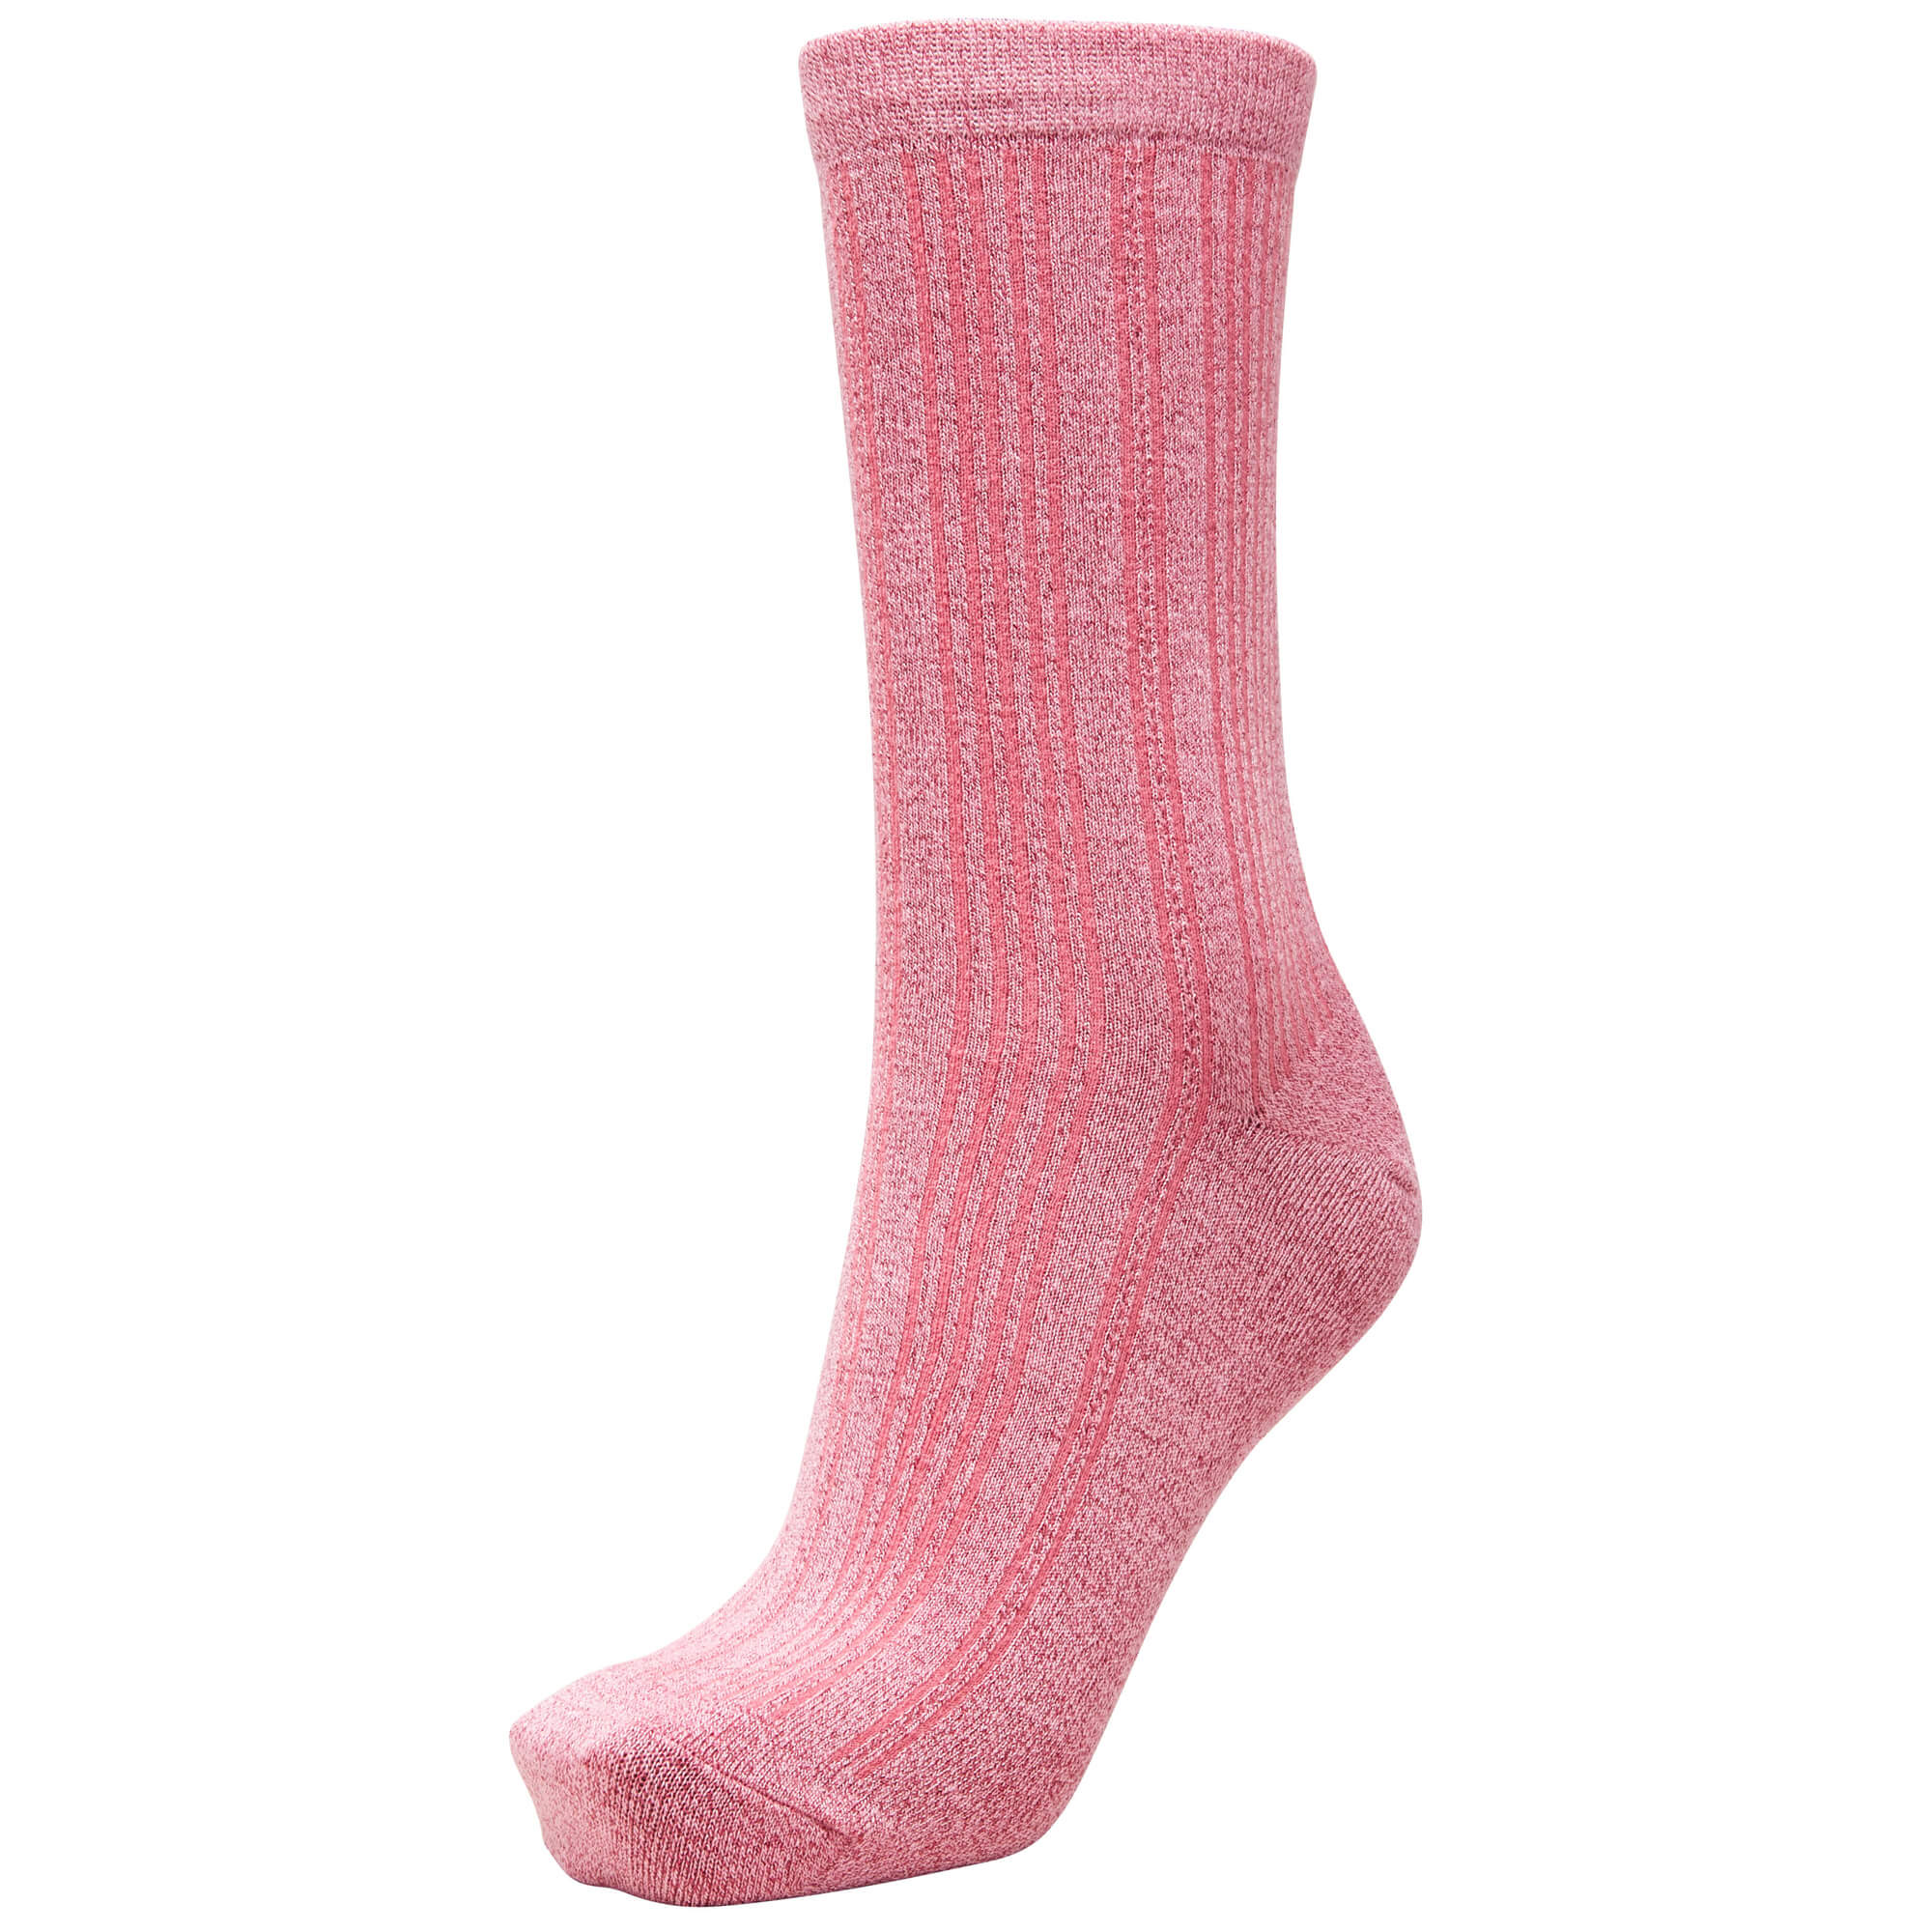 SLF Lana socks in rose bloom